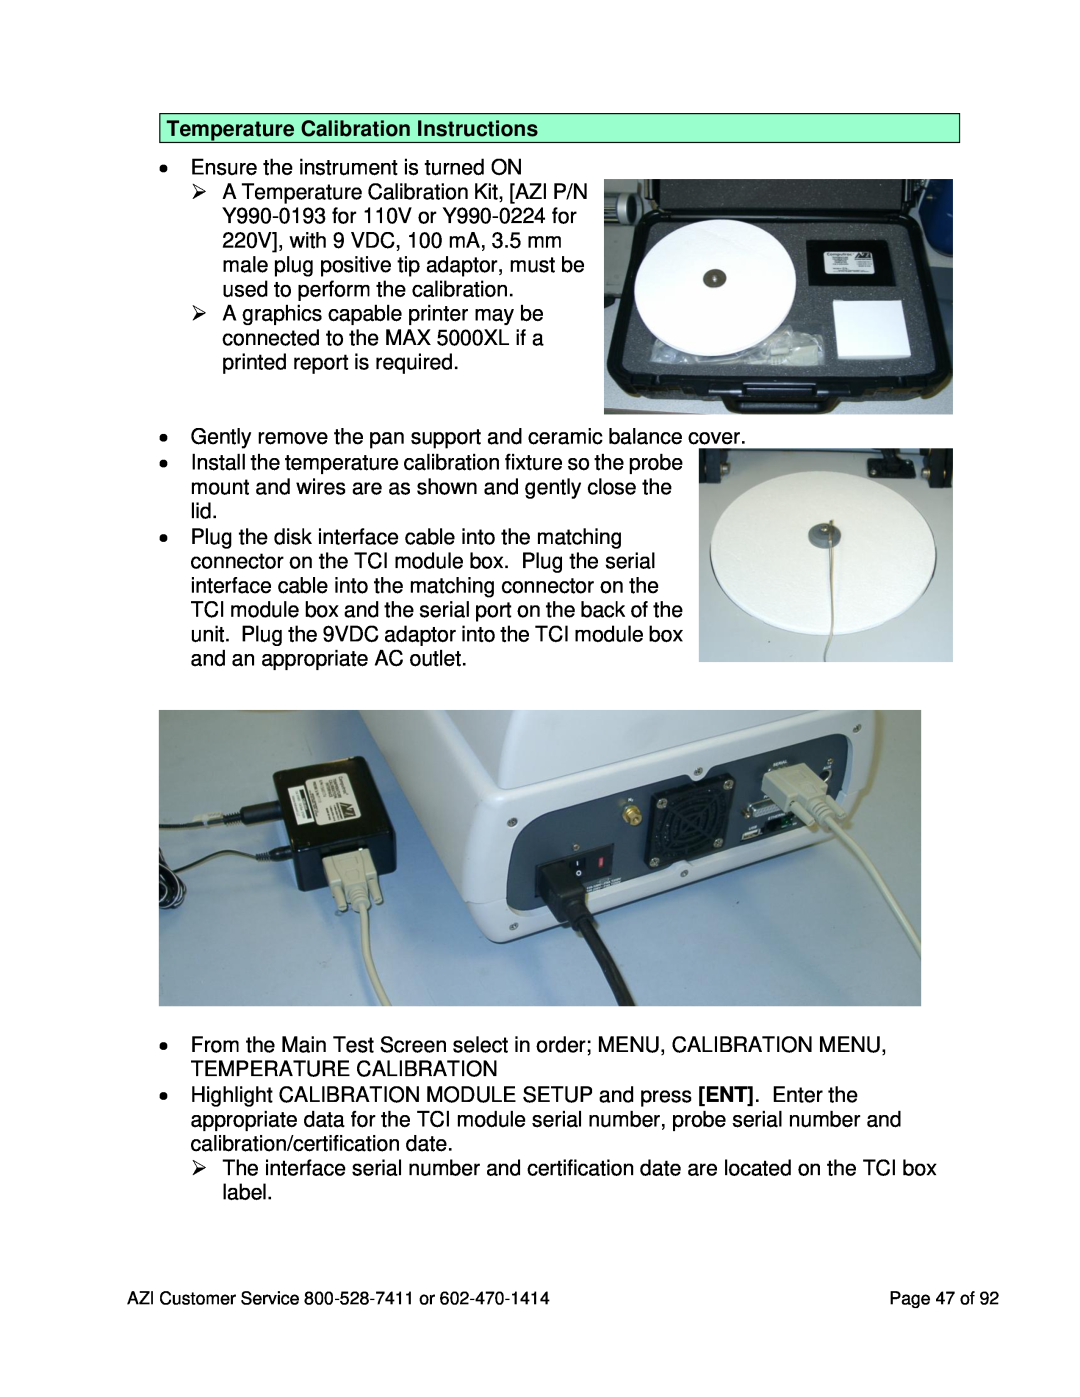 Arizona MAX-5000XL user manual Temperature Calibration Instructions 